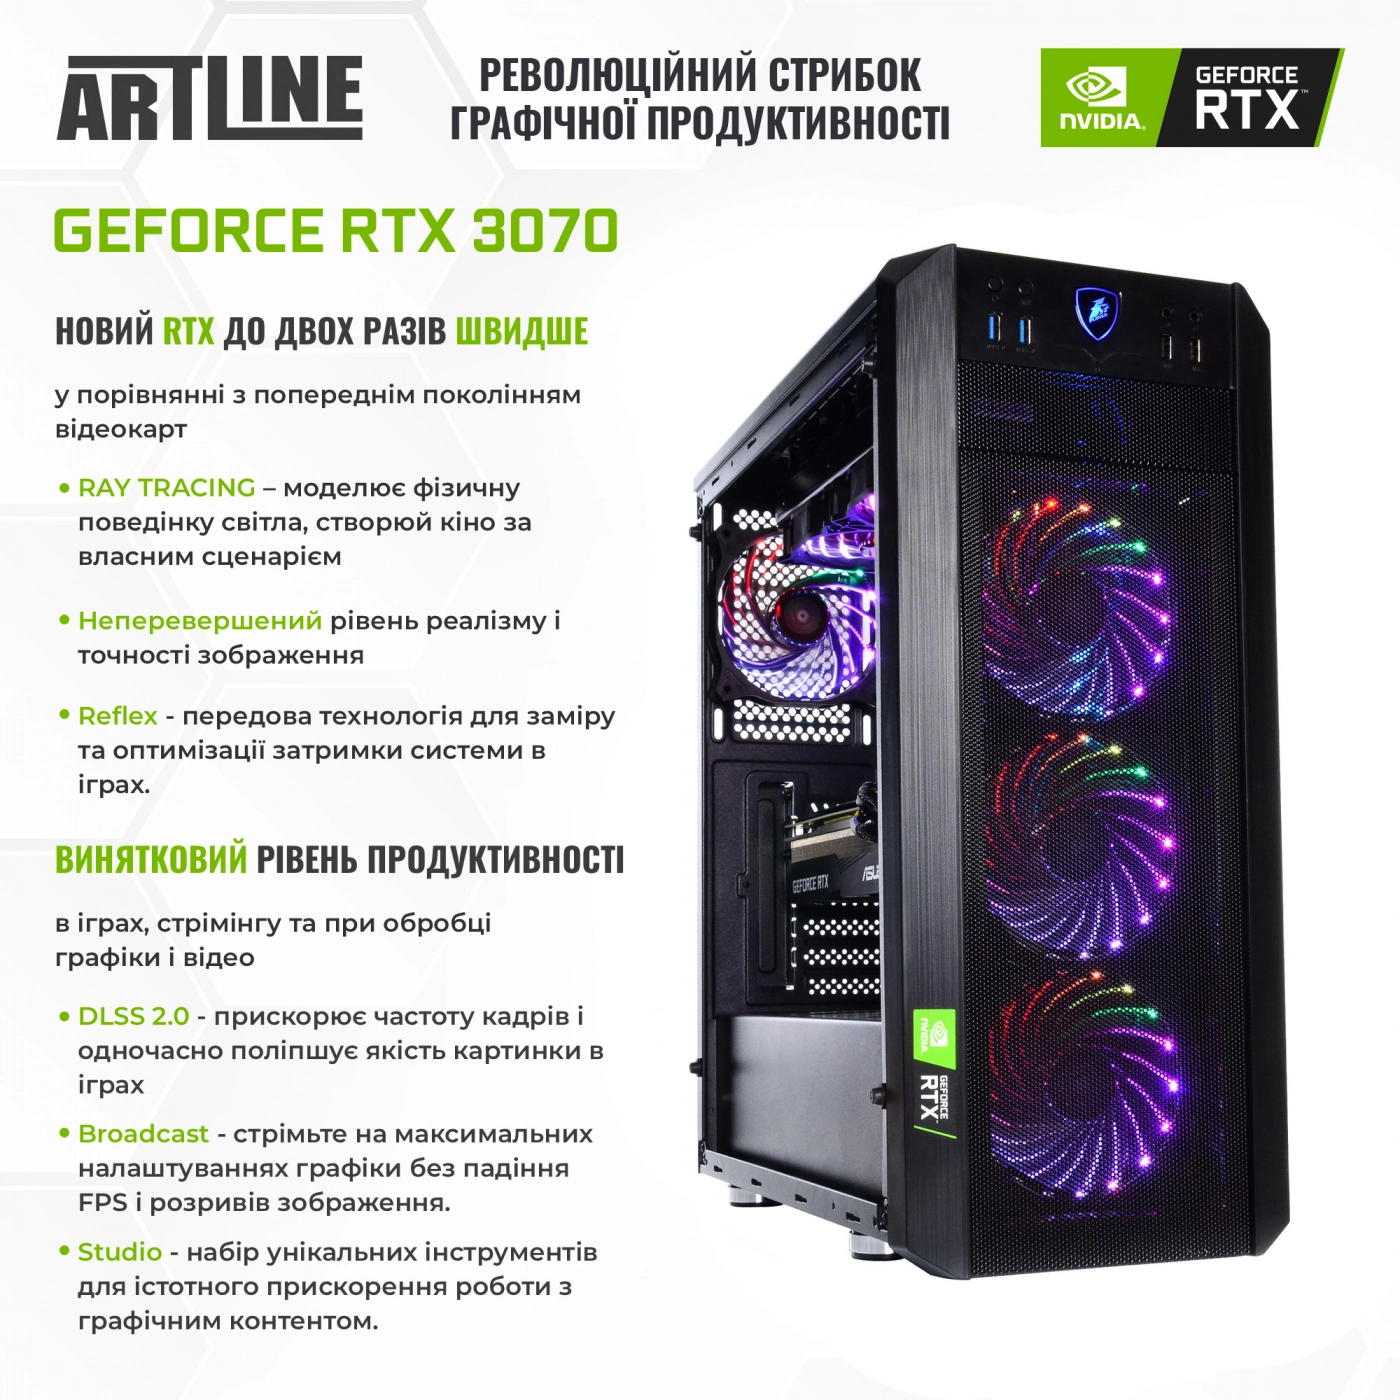 Купить Компьютер ARTLINE Gaming X93v55 - фото 3